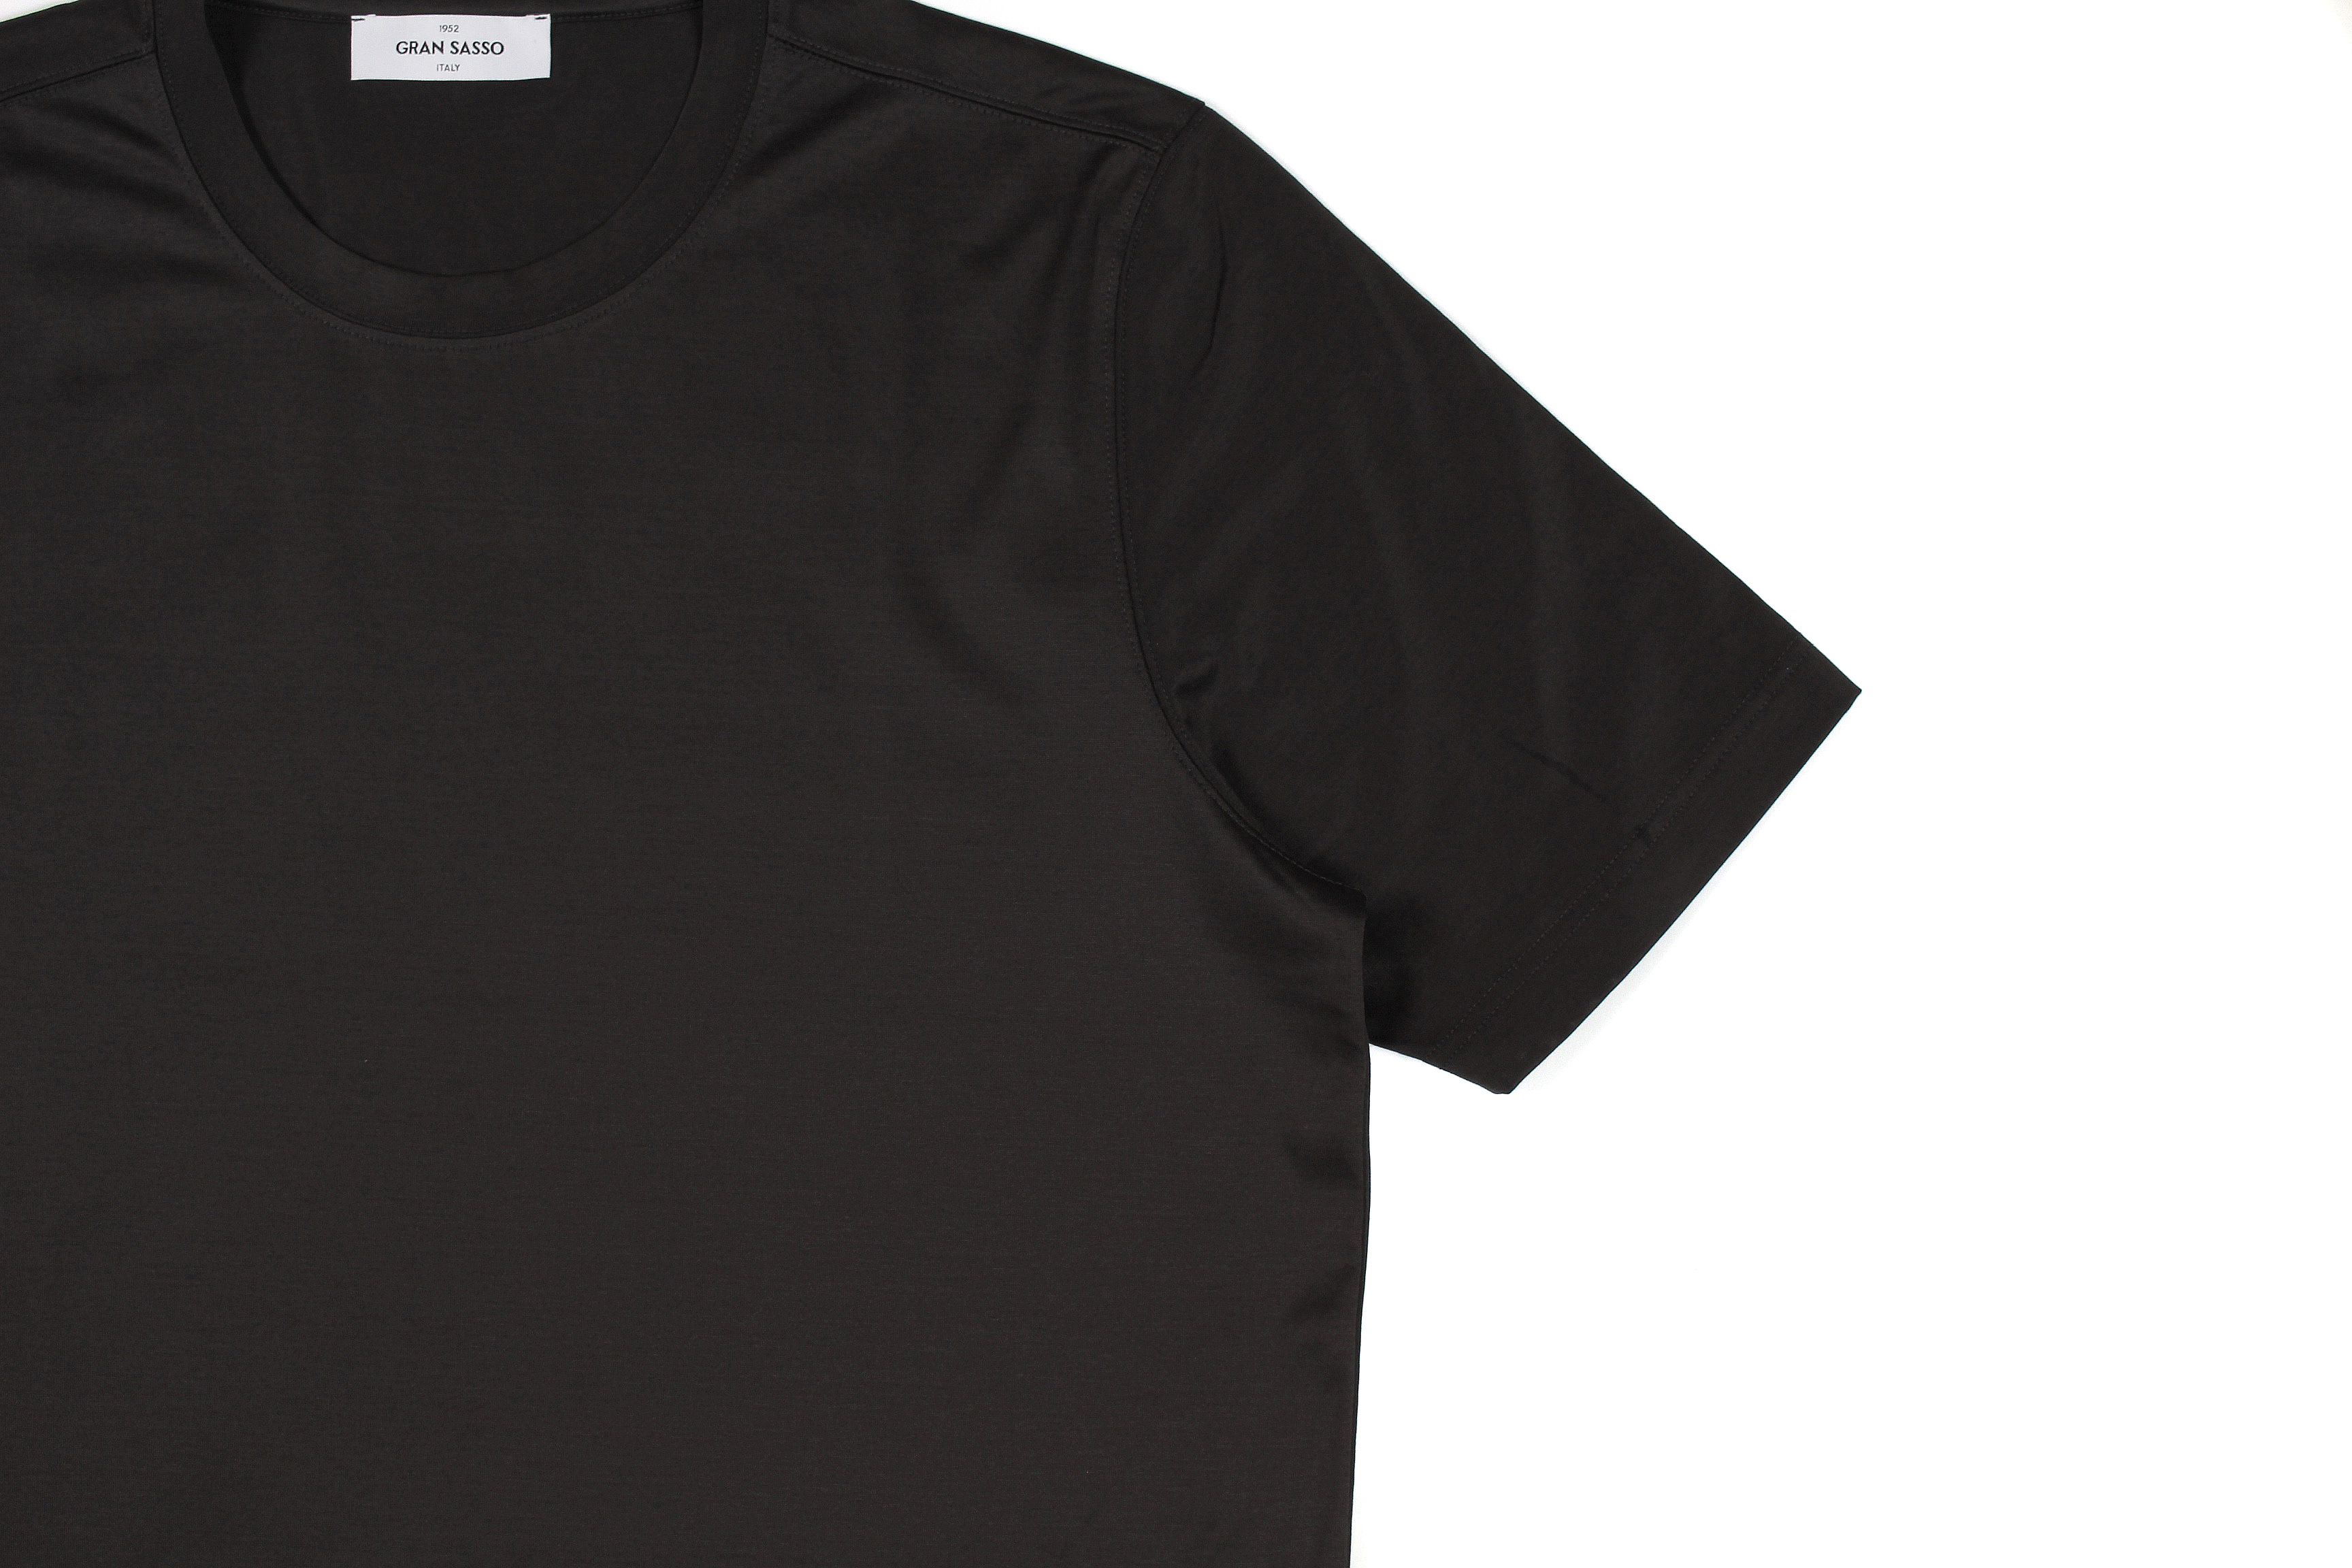 Gran Sasso (グランサッソ) Crew Neck T-shirt (クルーネック Tシャツ) Mercerised Cotton マーセライズドコットン Tシャツ CHARCOAL (チャコール・178) made in italy (イタリア製) 2022春夏新作 【入荷しました】【フリー分発売開始】愛知 名古屋 Alto e Diritto altoediritto アルトエデリット